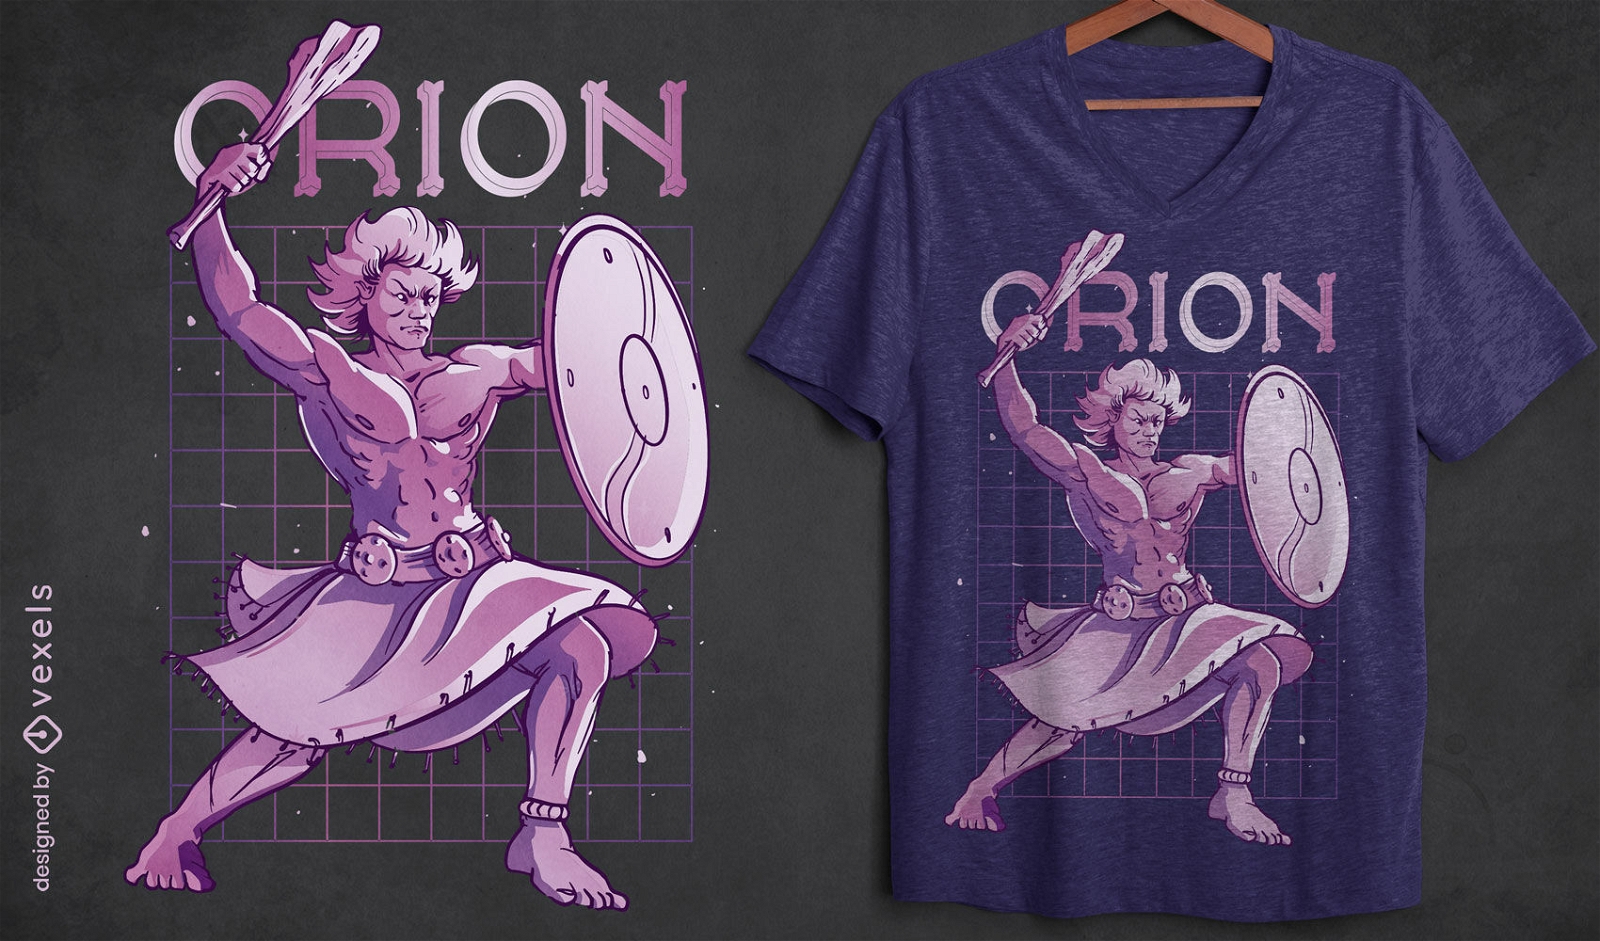 Diseño de camiseta de la mitología griega de Orión.